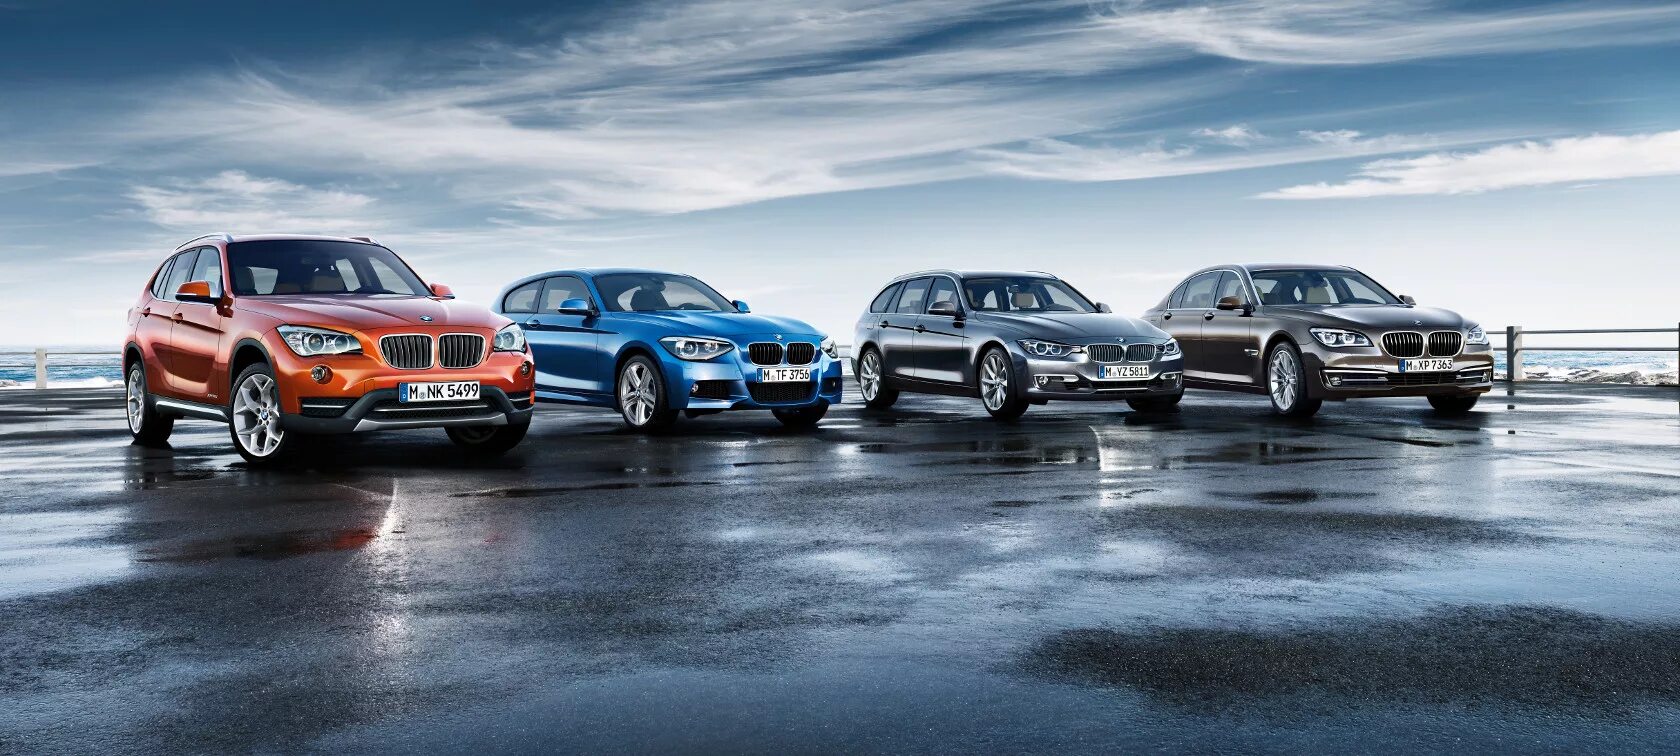 Первая группа автомобилей. BMW. Фото БМВ. Шапка сайта авто. BMW корпоративный авто.